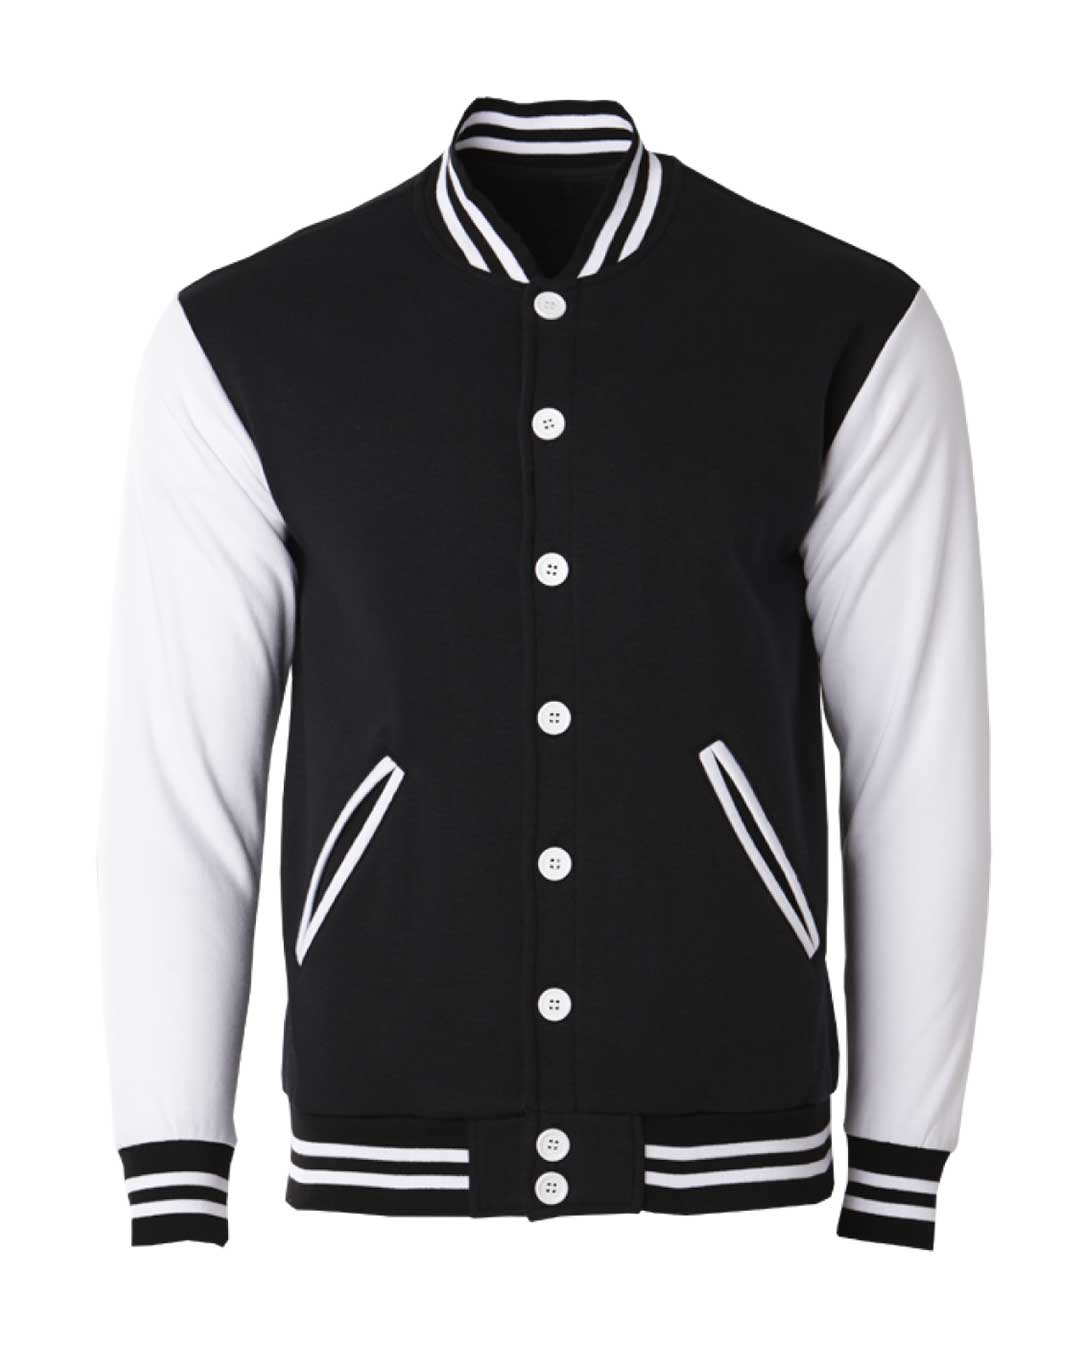 Varsity Jacket Black White